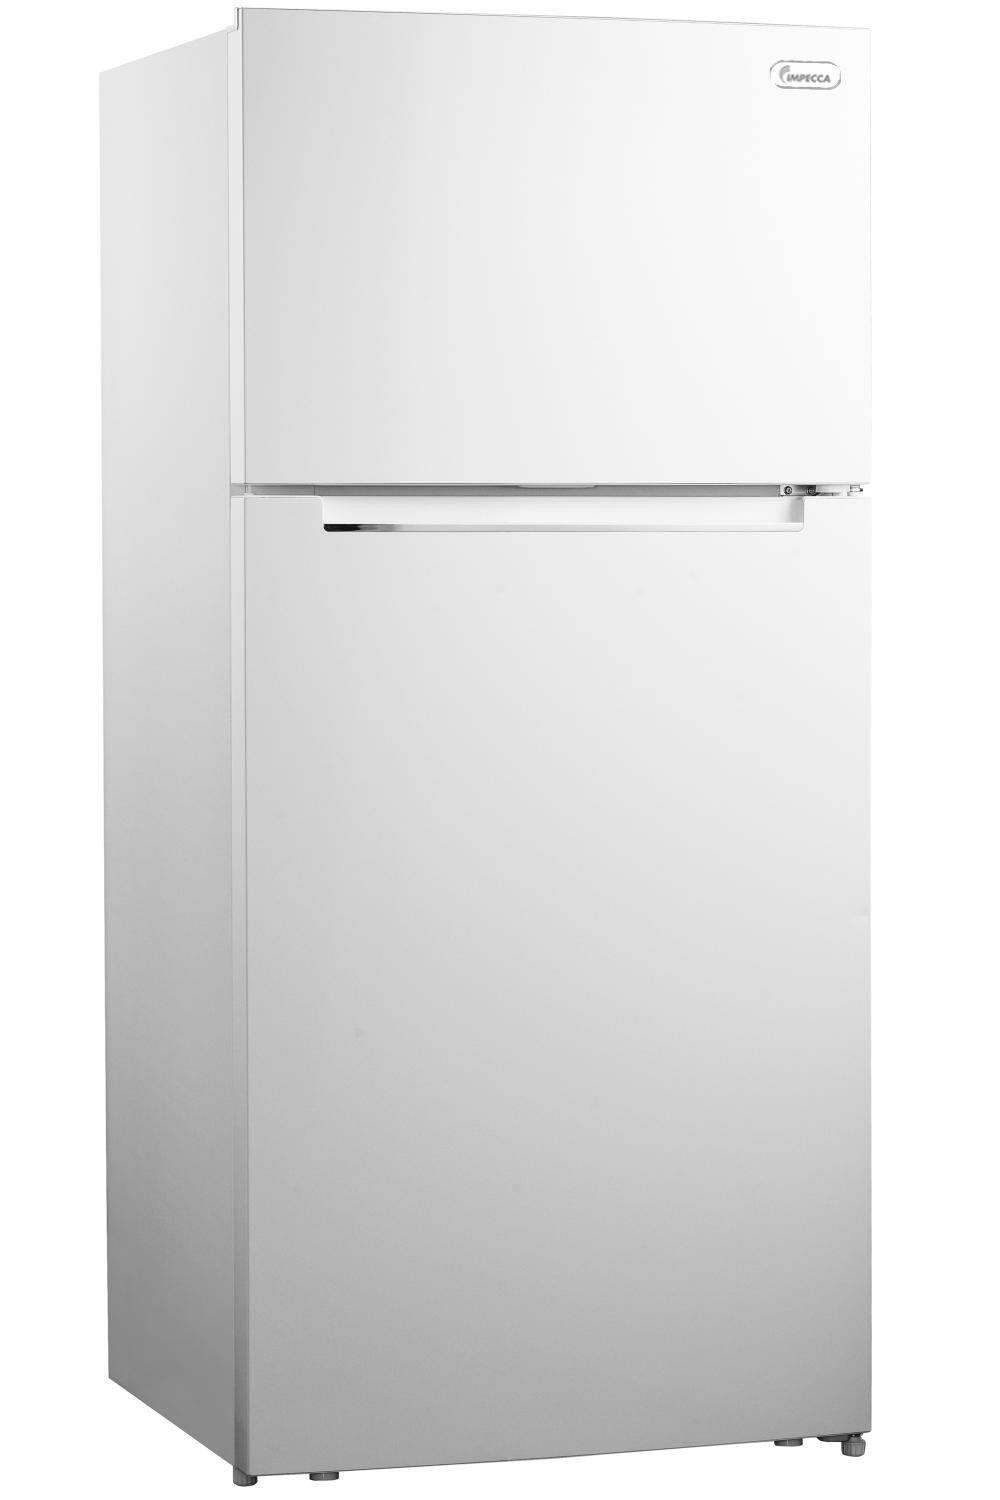 17 Cu Ft Counter Depth Refrigerator